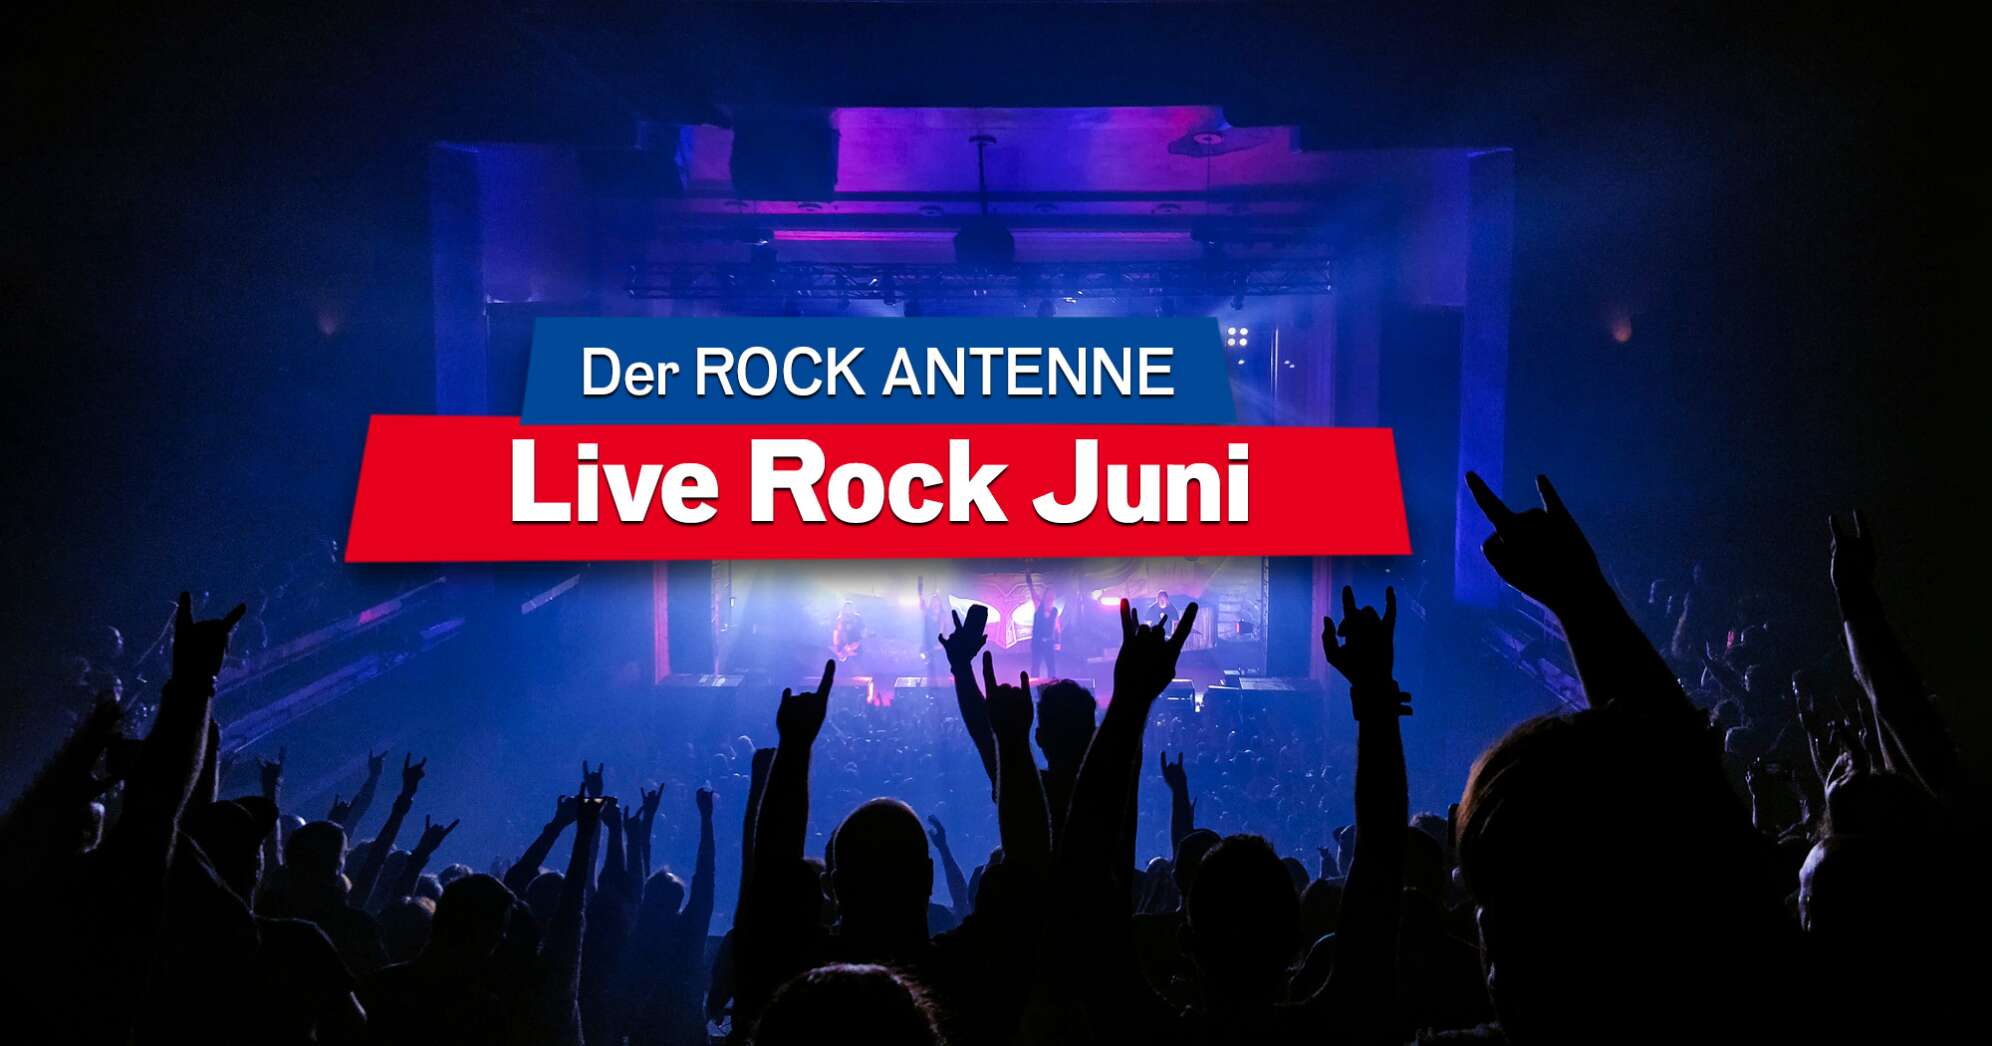 Blick auf die Bühne bei einem Konzert, Aufschrift "Der ROCK ANTENNE Live Rock Juni"